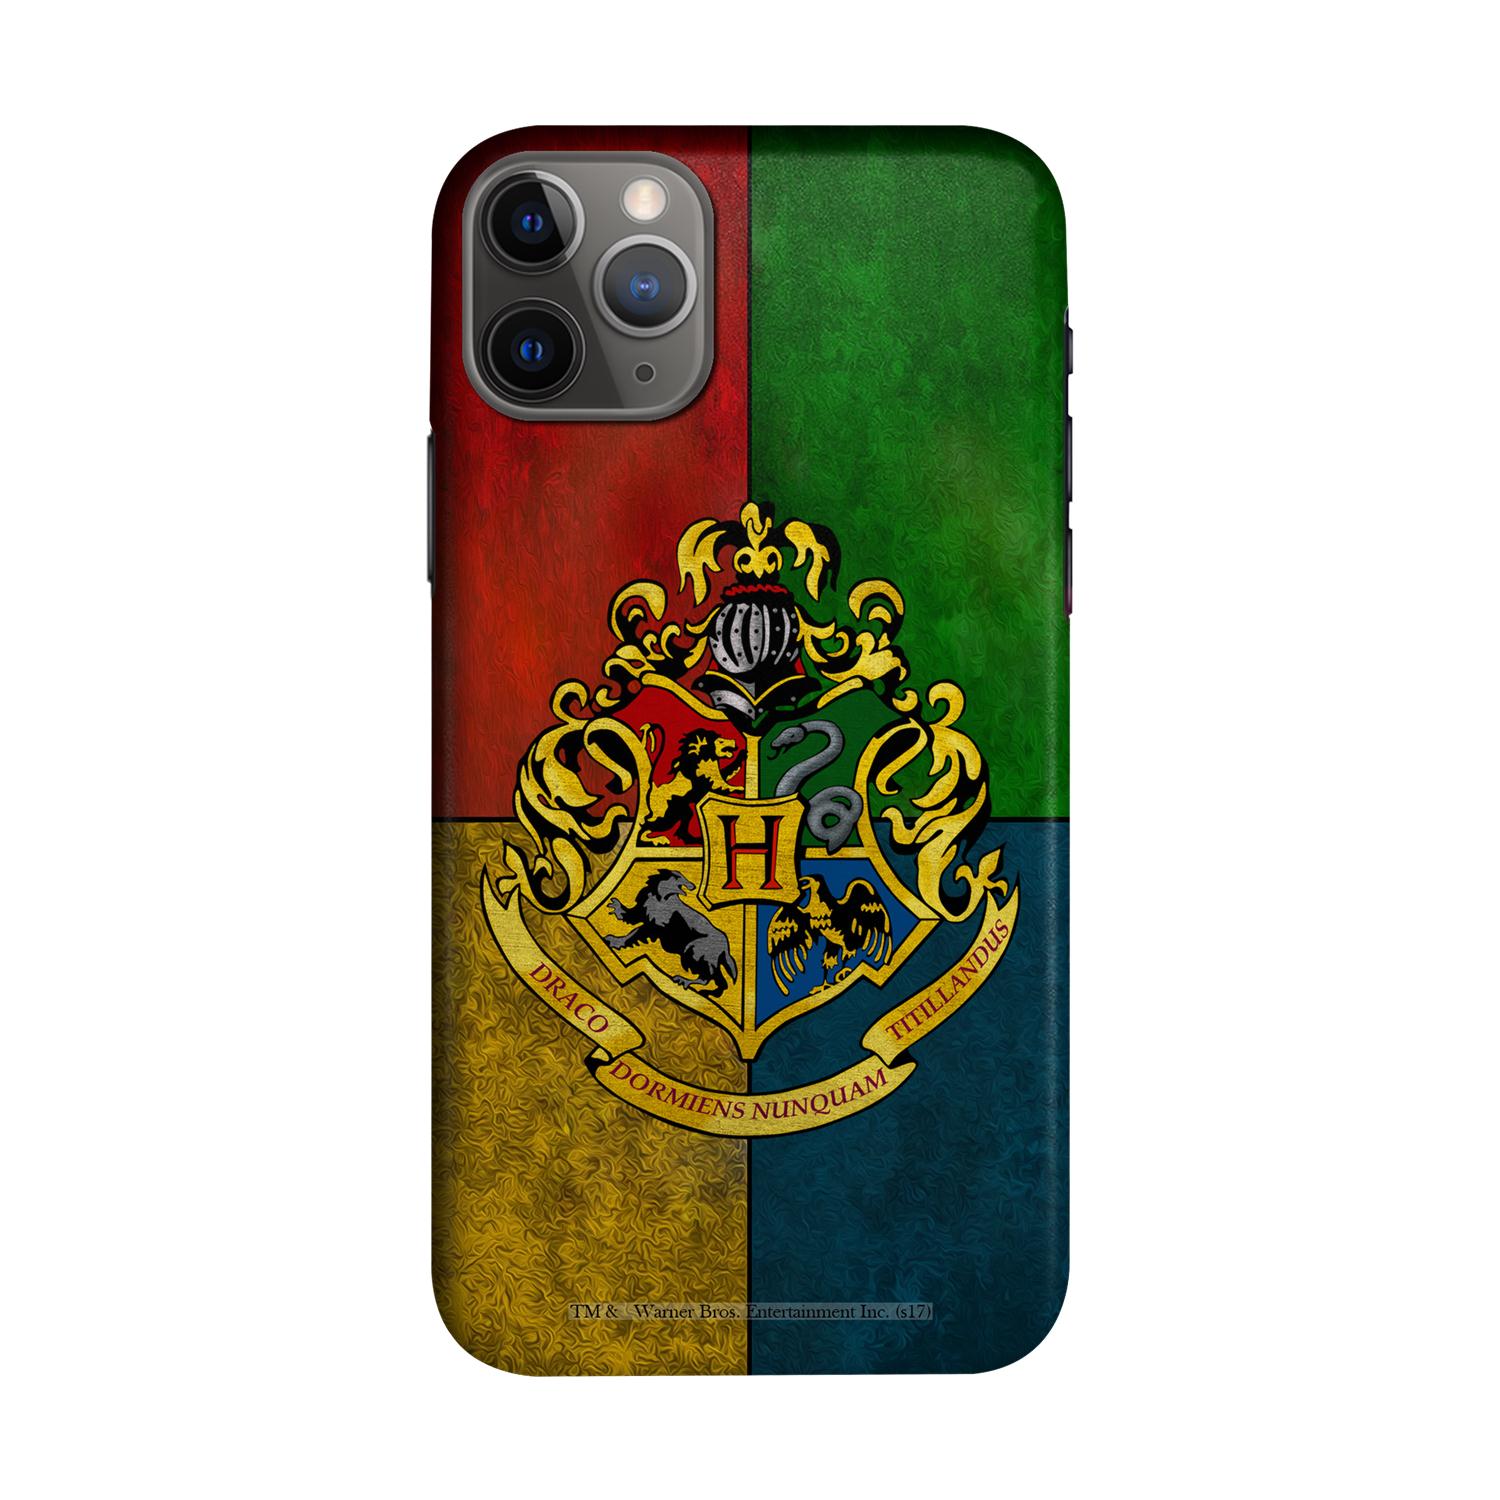 Buy Hogwarts Sigil - Sleek Phone Case for iPhone 11 Pro Max Online